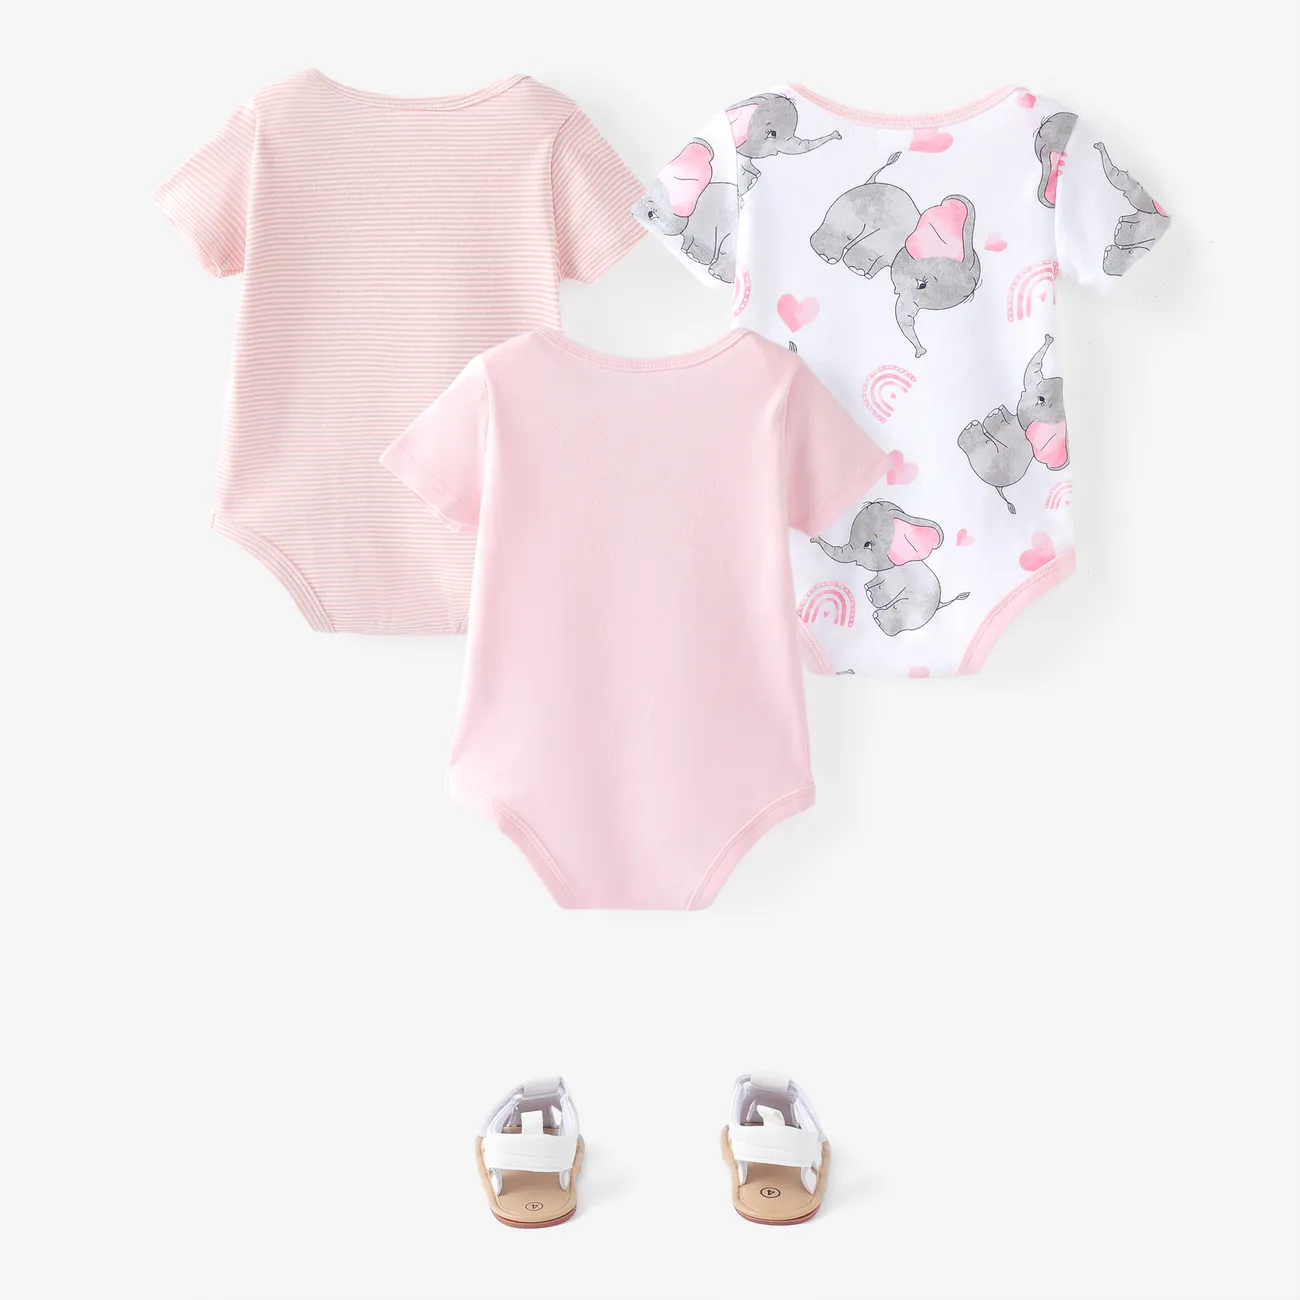 3 件裝女嬰/男嬰大像印花/純色短袖連身衣 粉色 big image 1